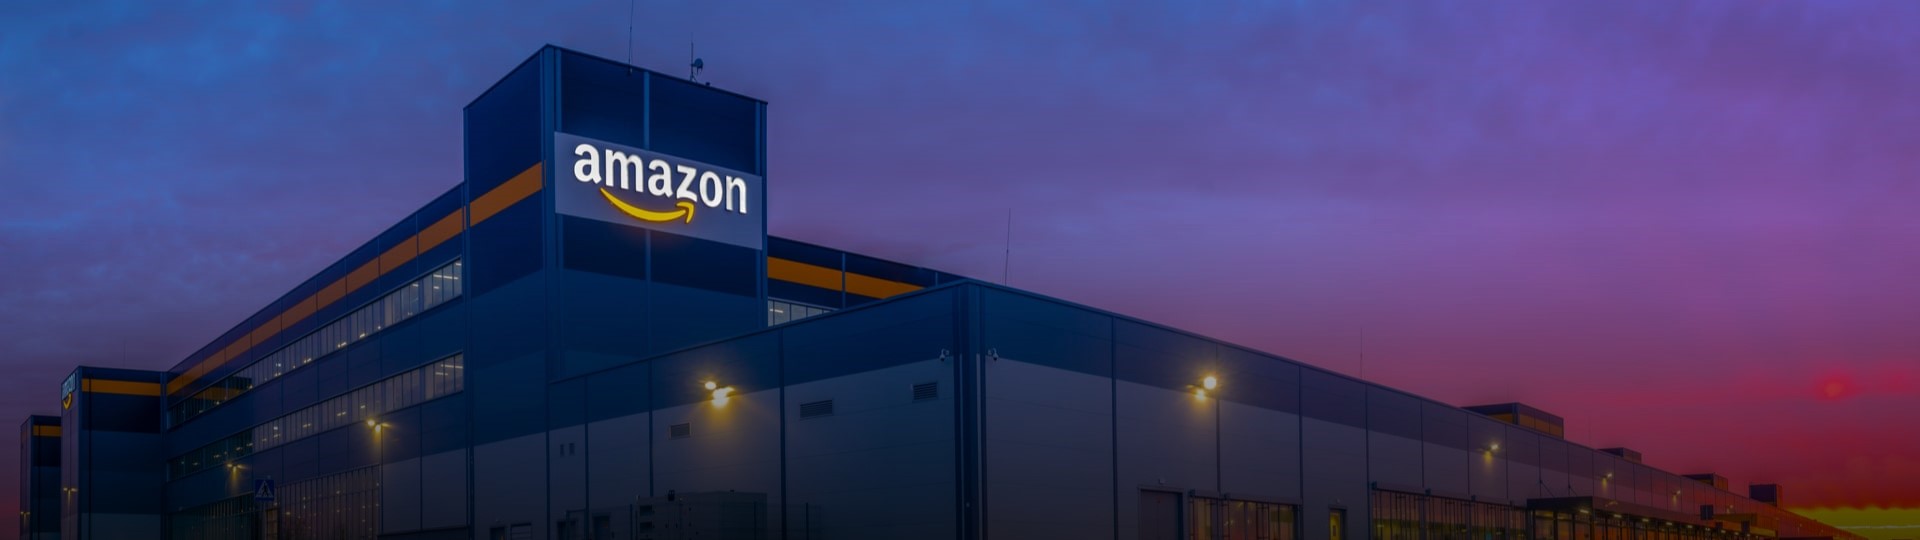 Amazon hodlá přijmout dalších 55.000 nových zaměstnanců